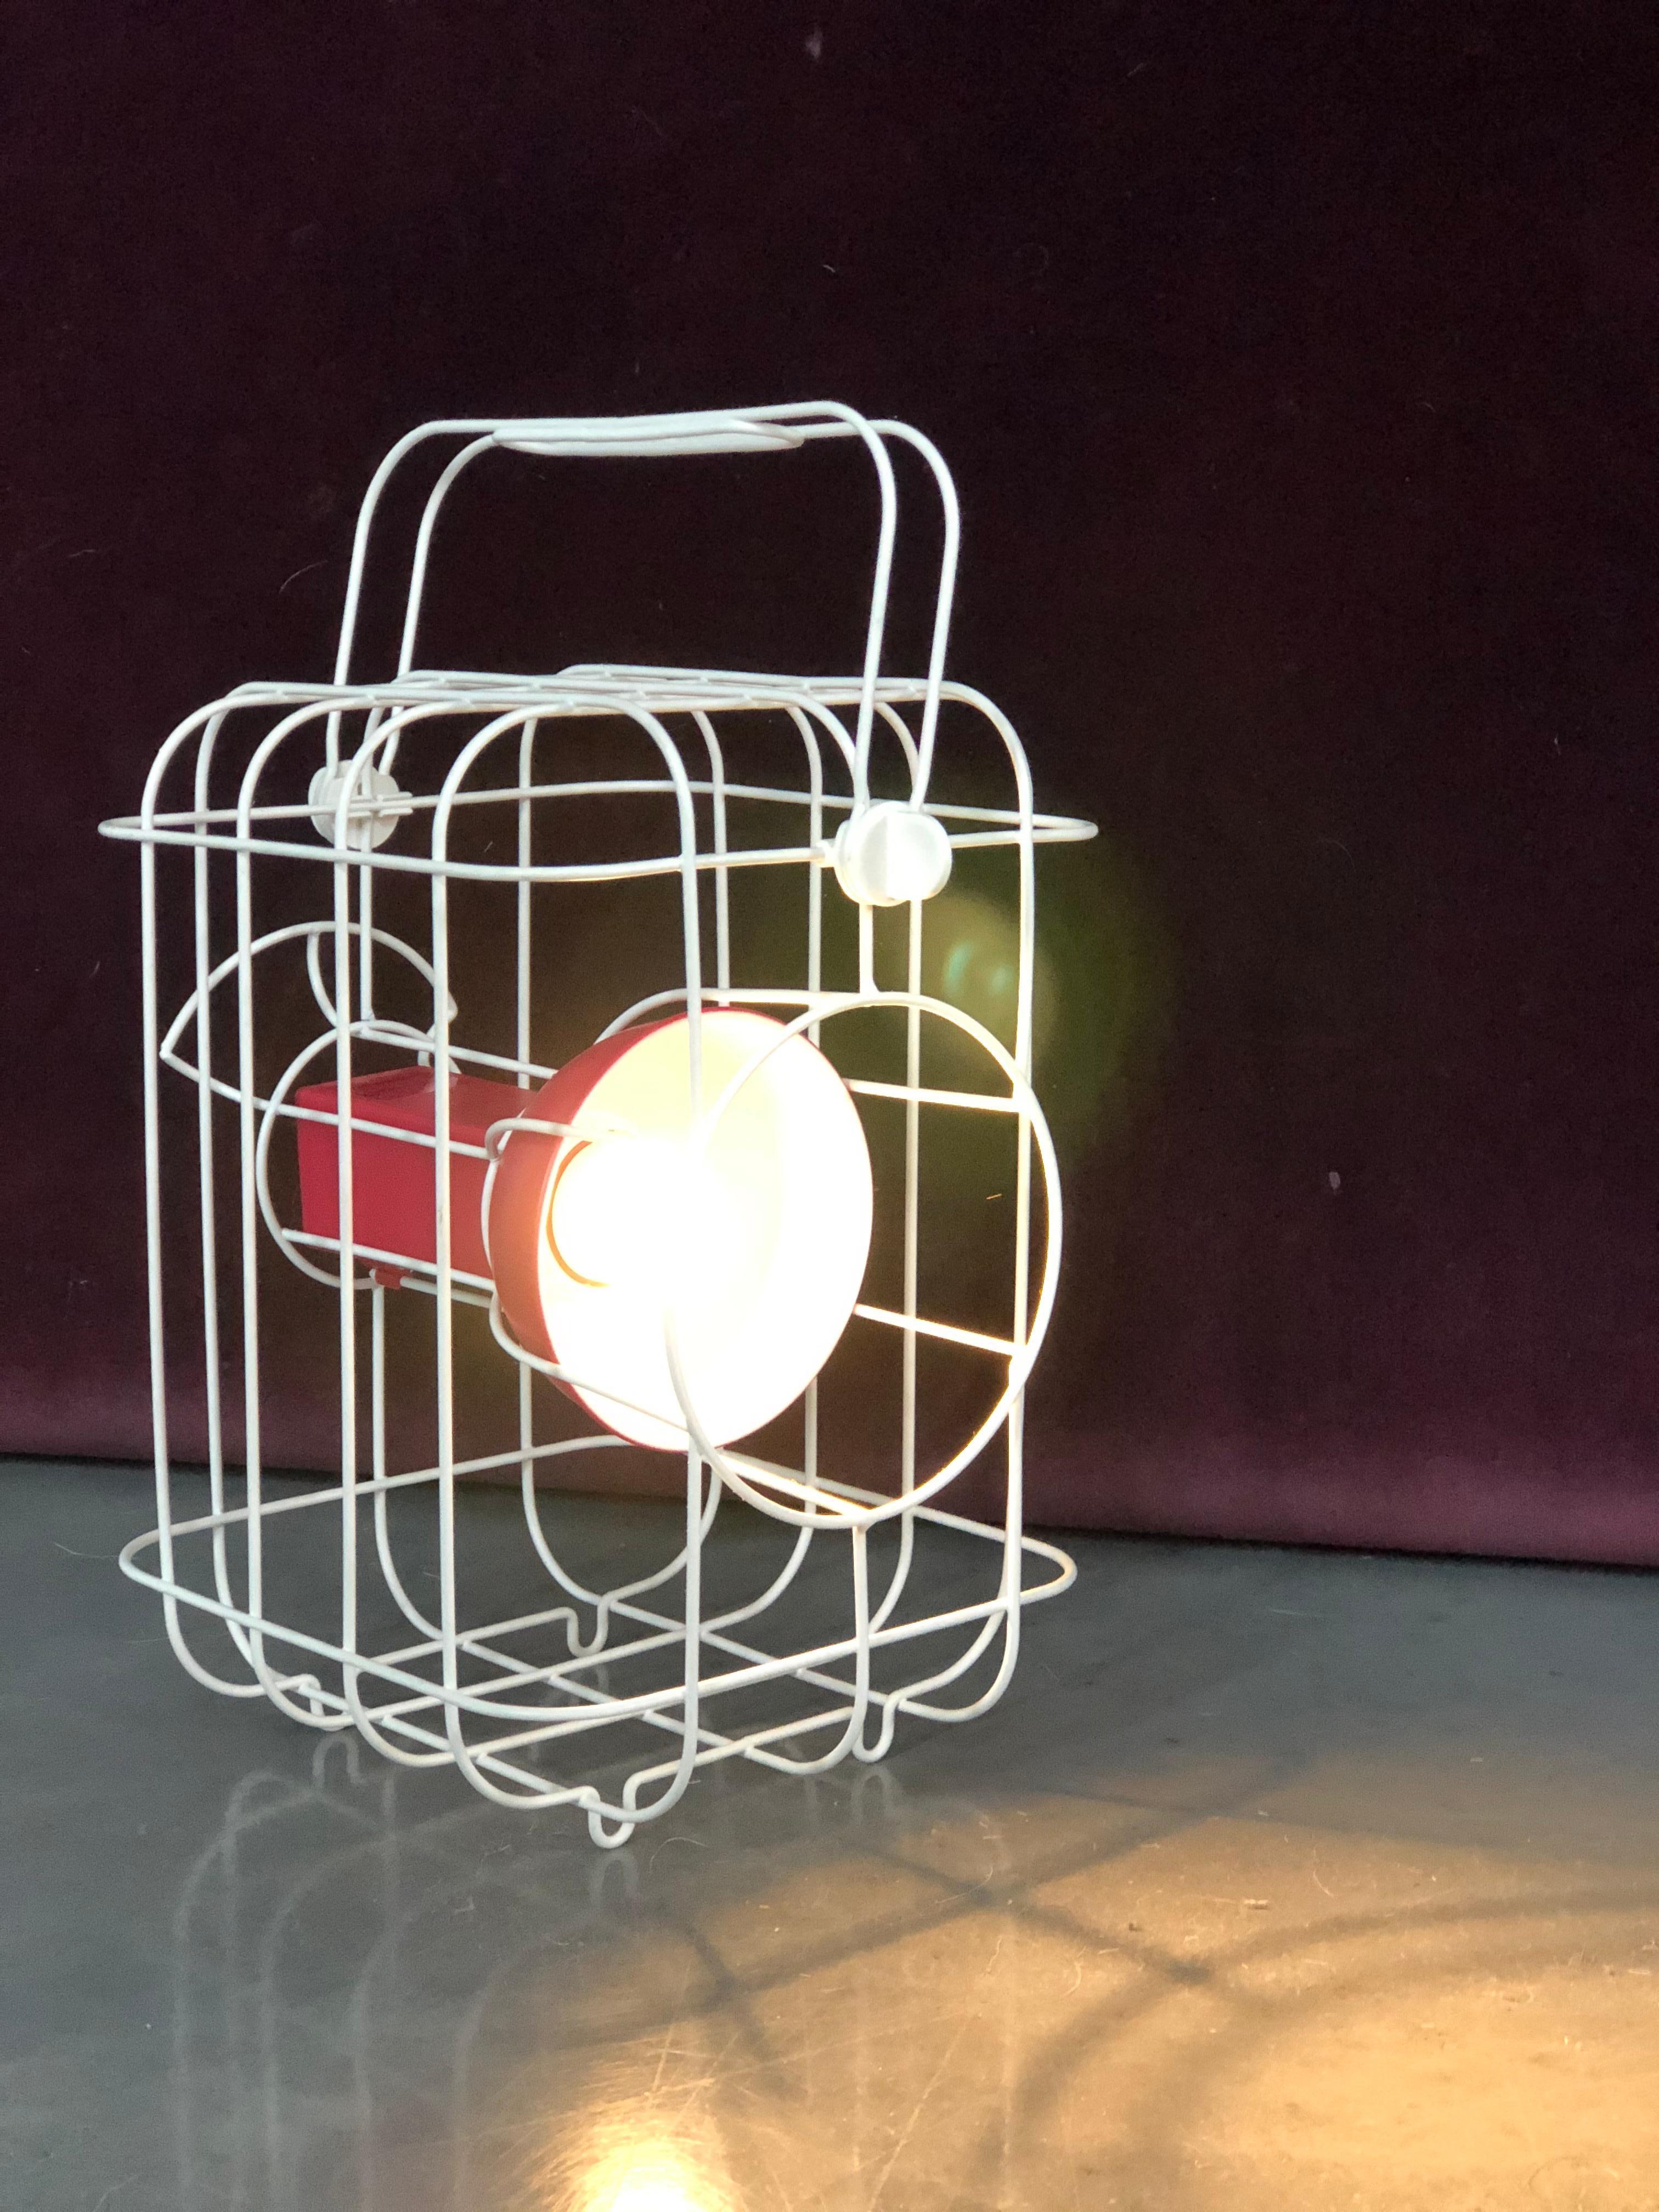 La designer française Matali Crasset a créé une lampe basée sur l'éclairage ferroviaire traditionnel pour la collection PS 2017 d'IKEA.
Crasset s'est inspiré des lanternes de chemin de fer classiques pour concevoir le design.

